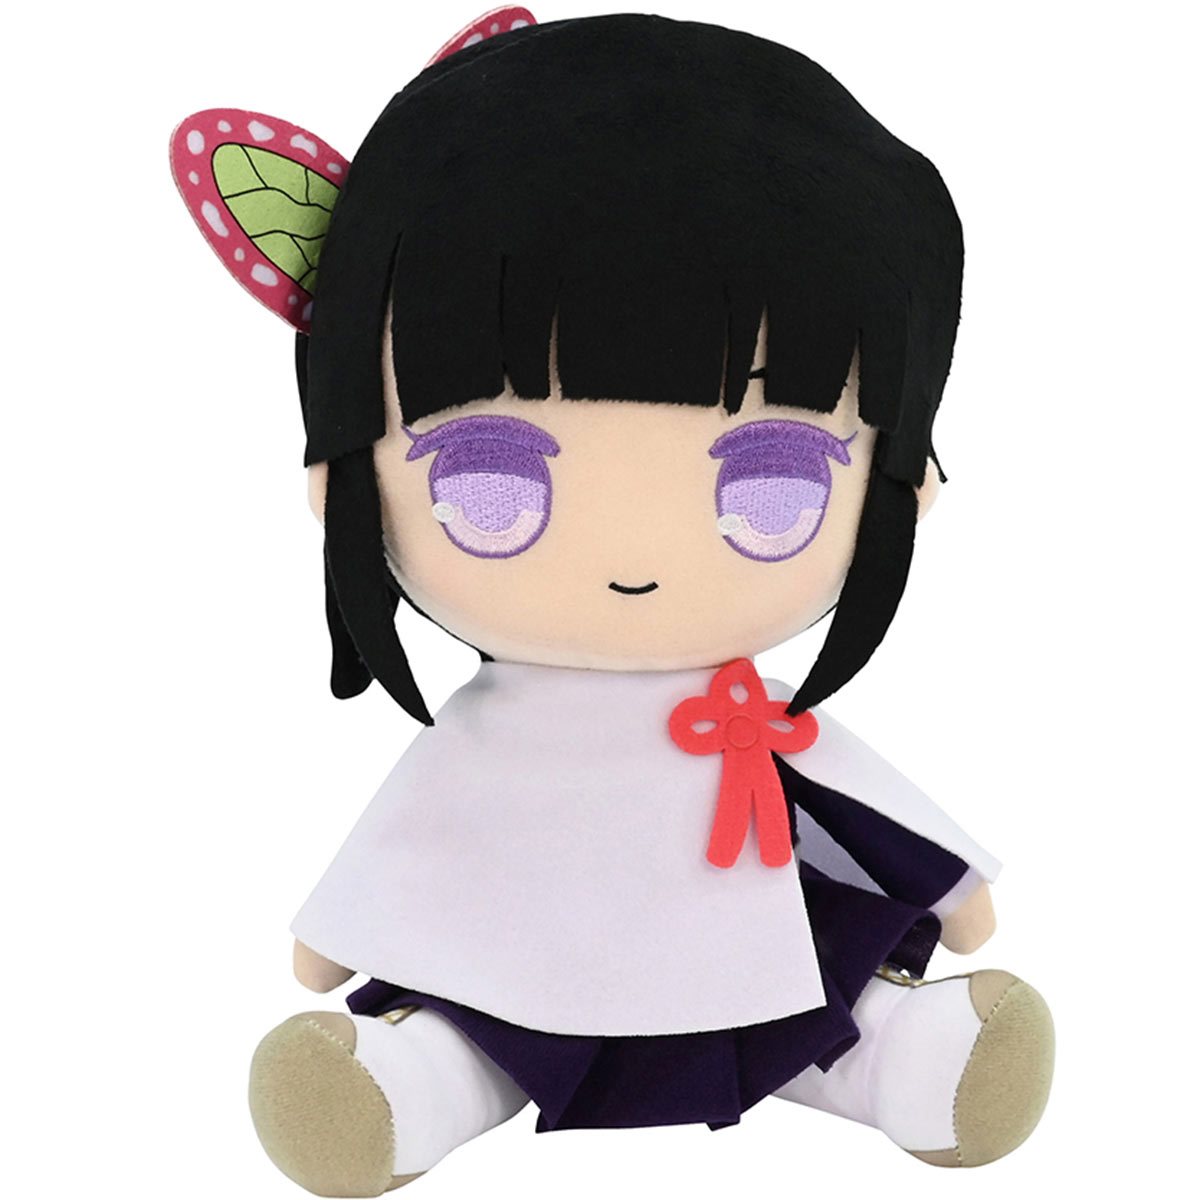 BANDAI Demon Slayer Chibi Plush doll Kanao Tsuyuri stuffed toy Kimetsu no Yaiba